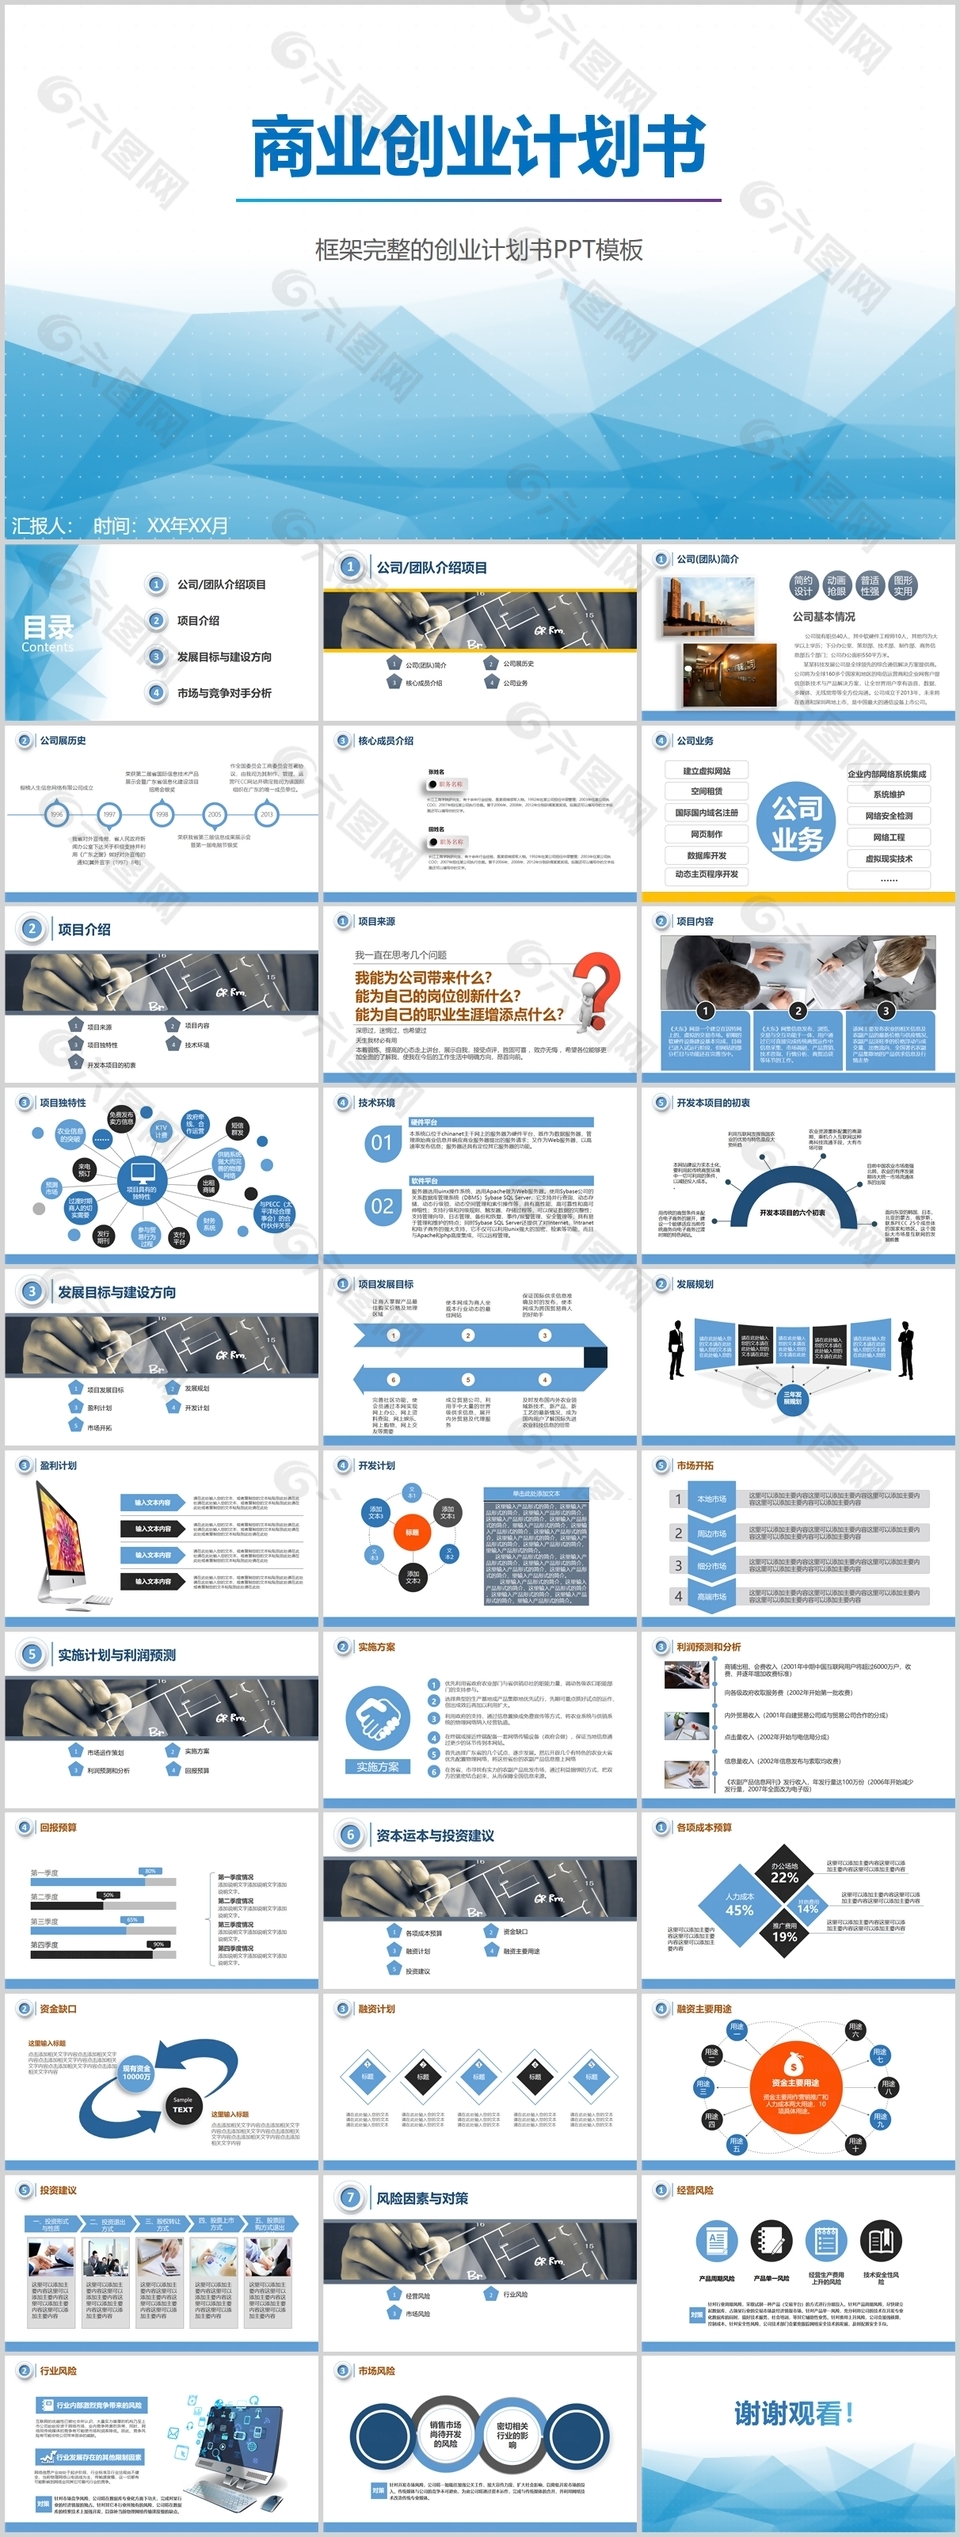 蓝色简约框架完整商业创业计划书PPT模板